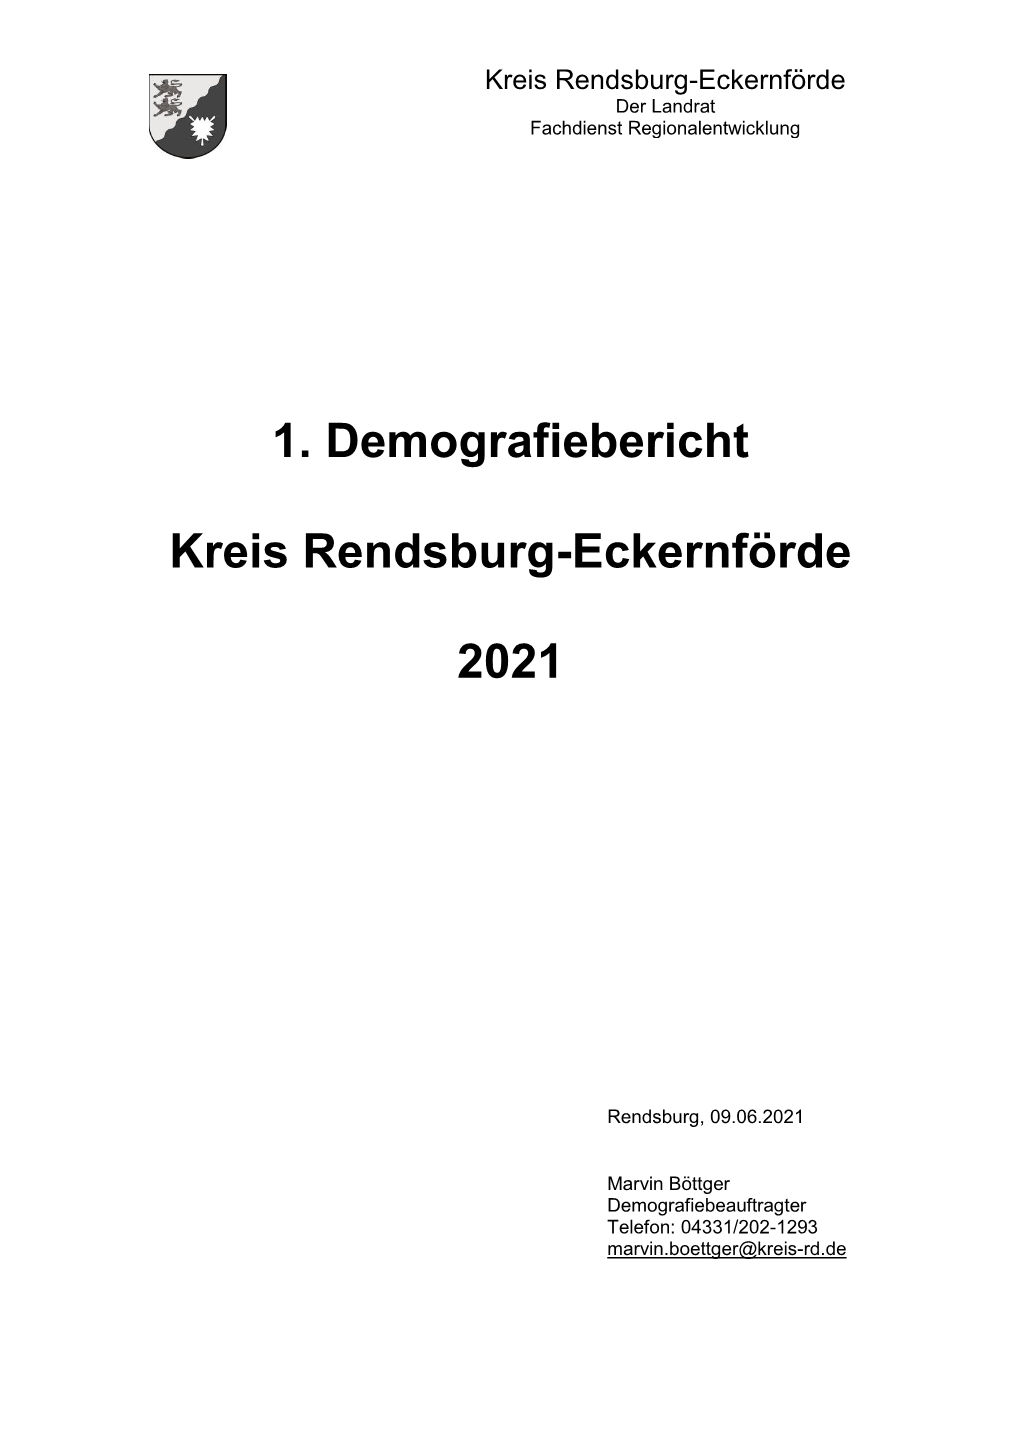 Wanderungsbewegungen Im Kreis Rendsburg-Eckernförde…………